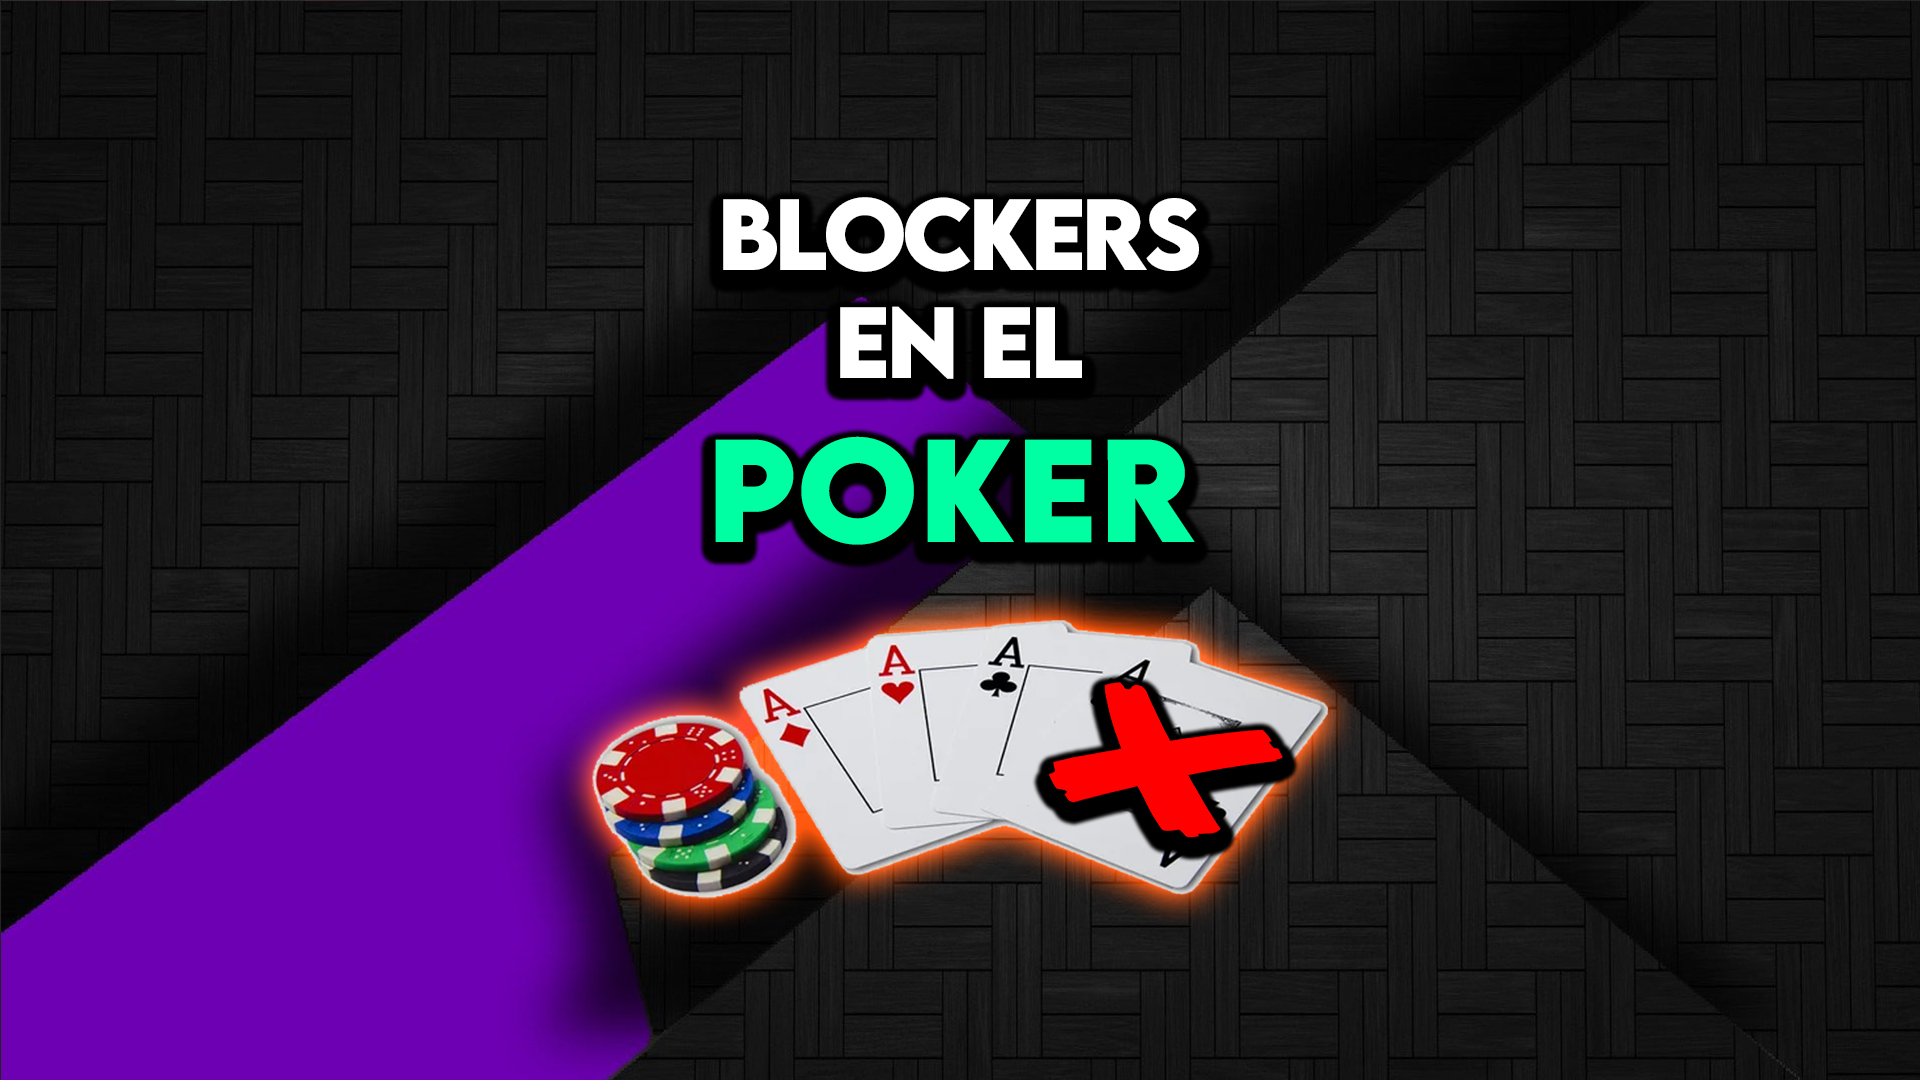  LOS BLOCKERS EN EL POKER